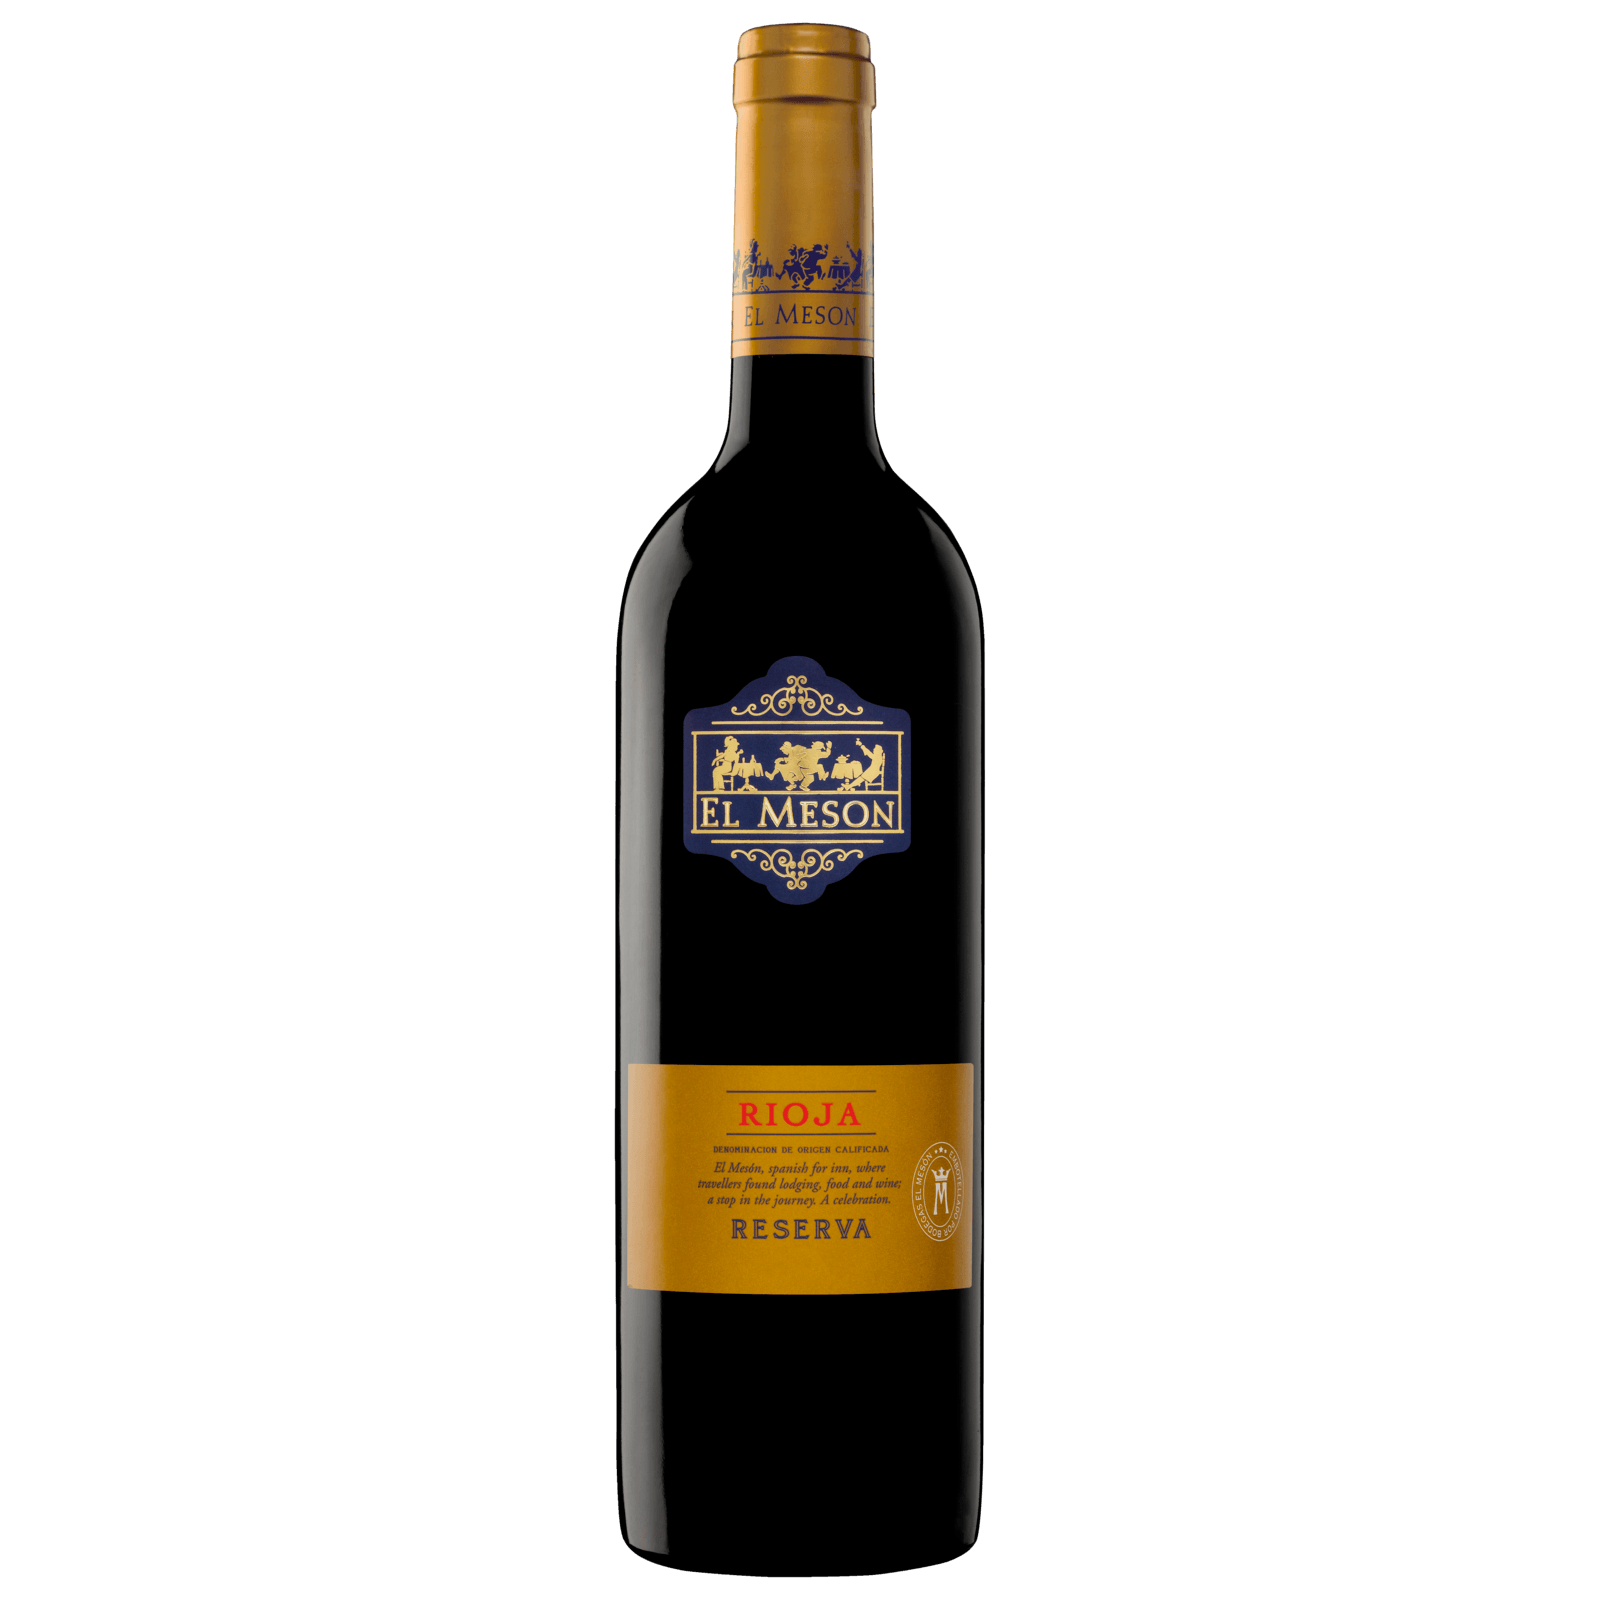 Cepa Lebrel Rioja Reserva DOCa trocken, Rotwein 2017 für 4,99€ von Lidl